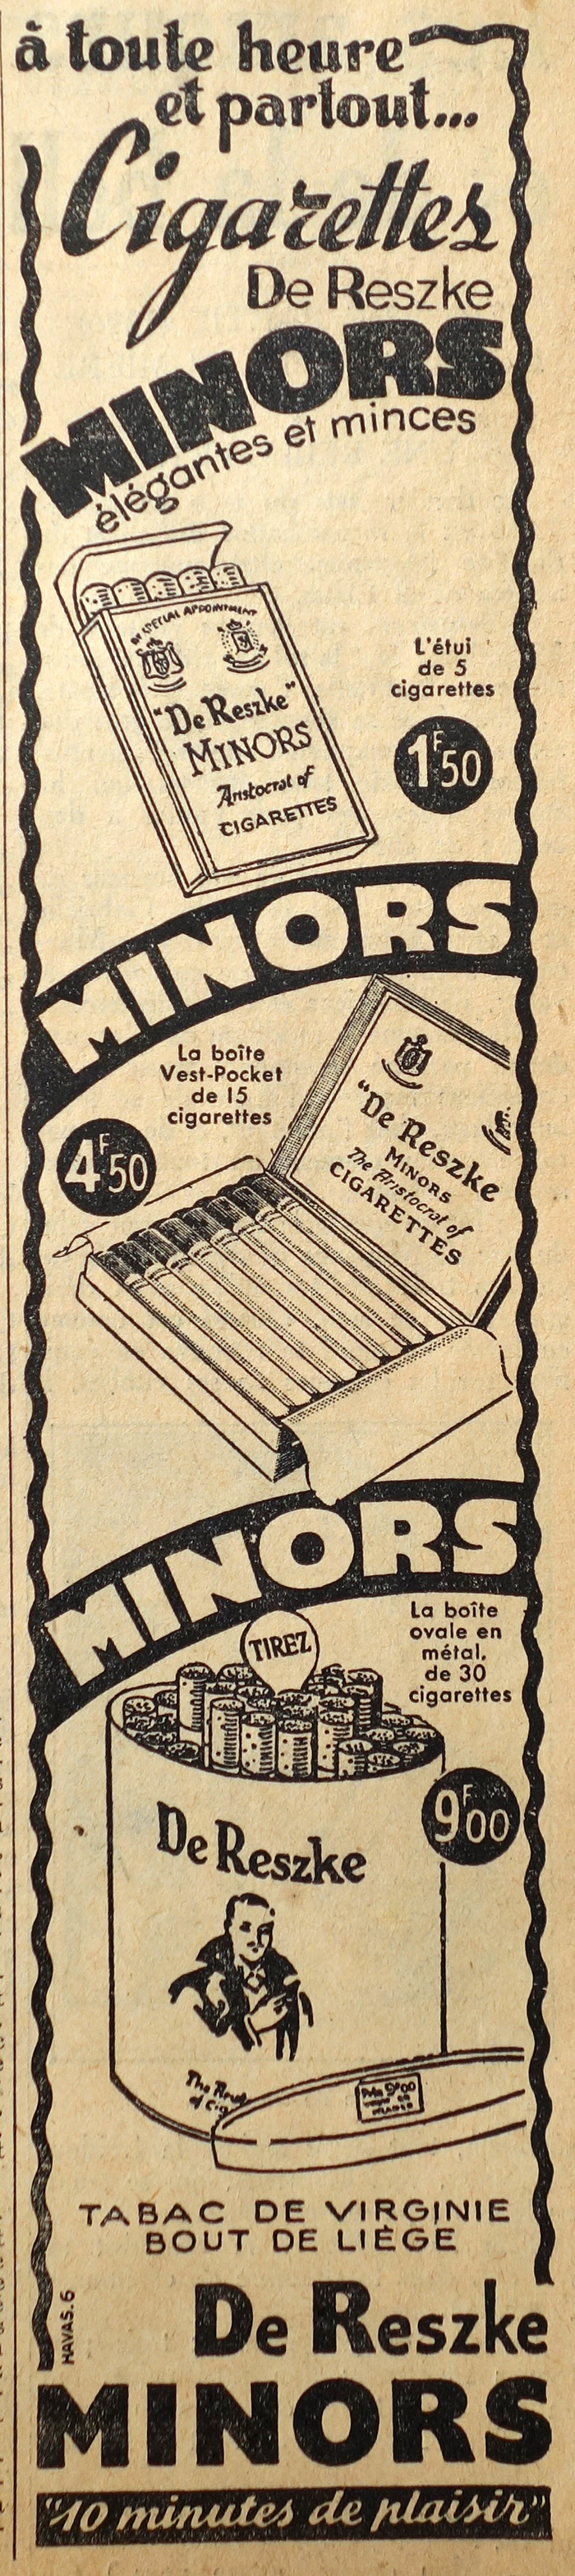 cigarettes-minorspublicite-journal-le-petit-parisien-19366-site-photogriffon.jpg